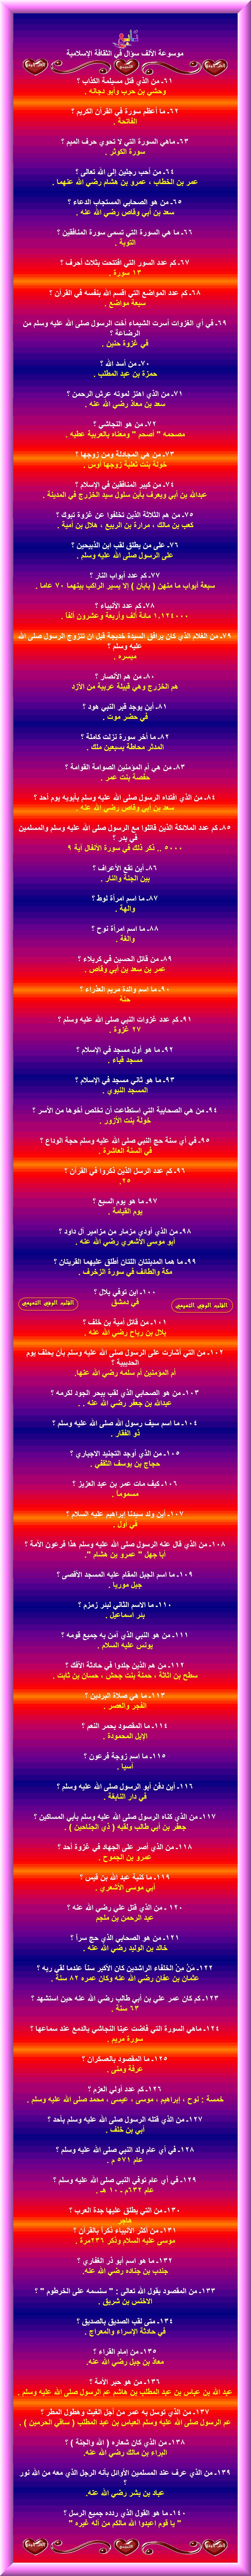 موسوعة الألف سؤال وأجوبتها في الثقافة الإسلامية 2-1